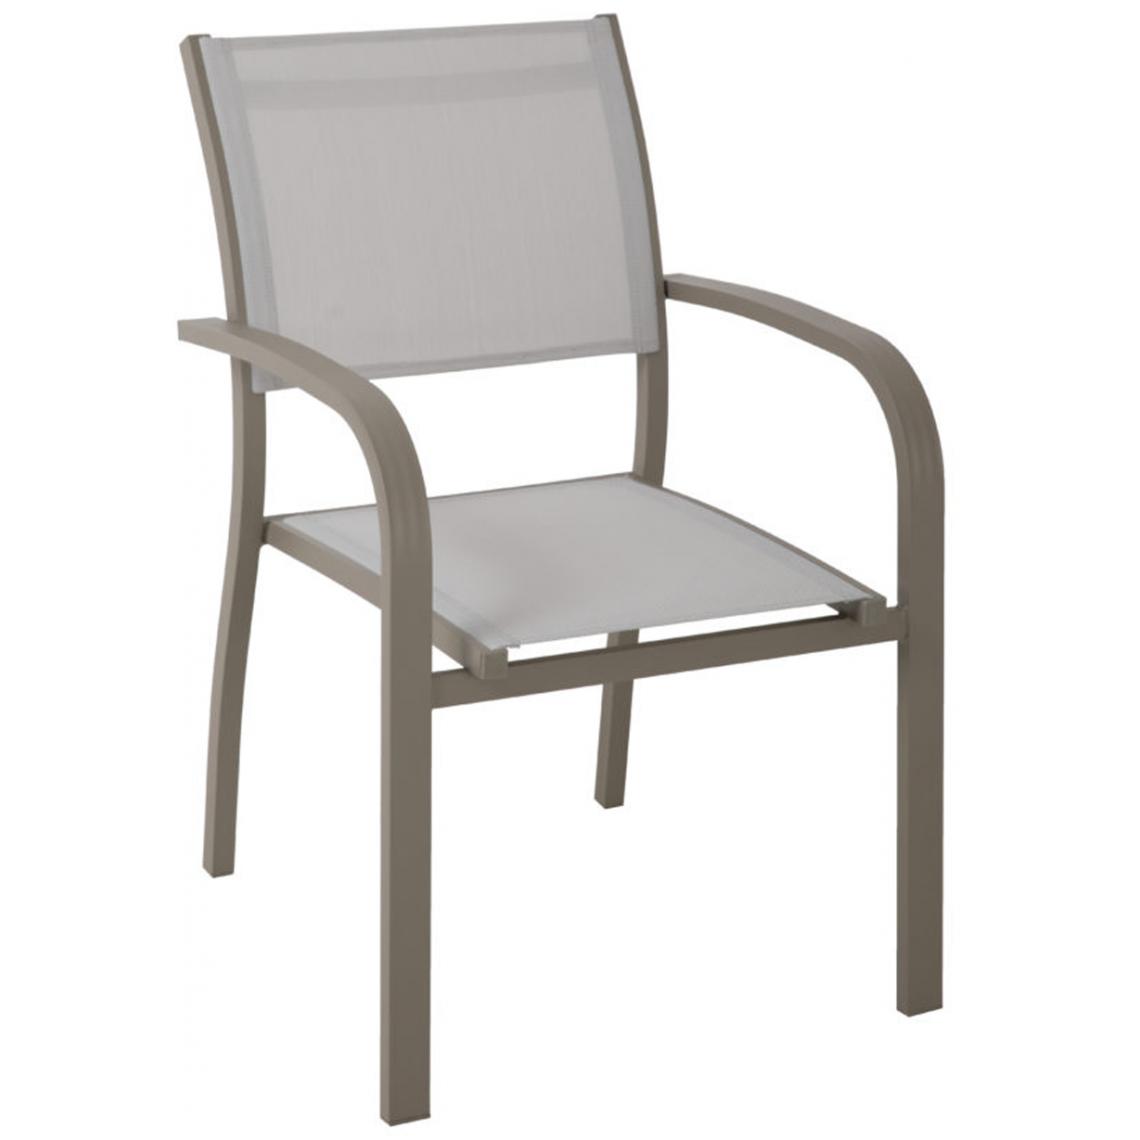 Pegane - Lot de 4 Chaises en aluminium et textilène coloris gris clair - 56 x 86 x 58 cm -PEGANE- - Chaises de jardin